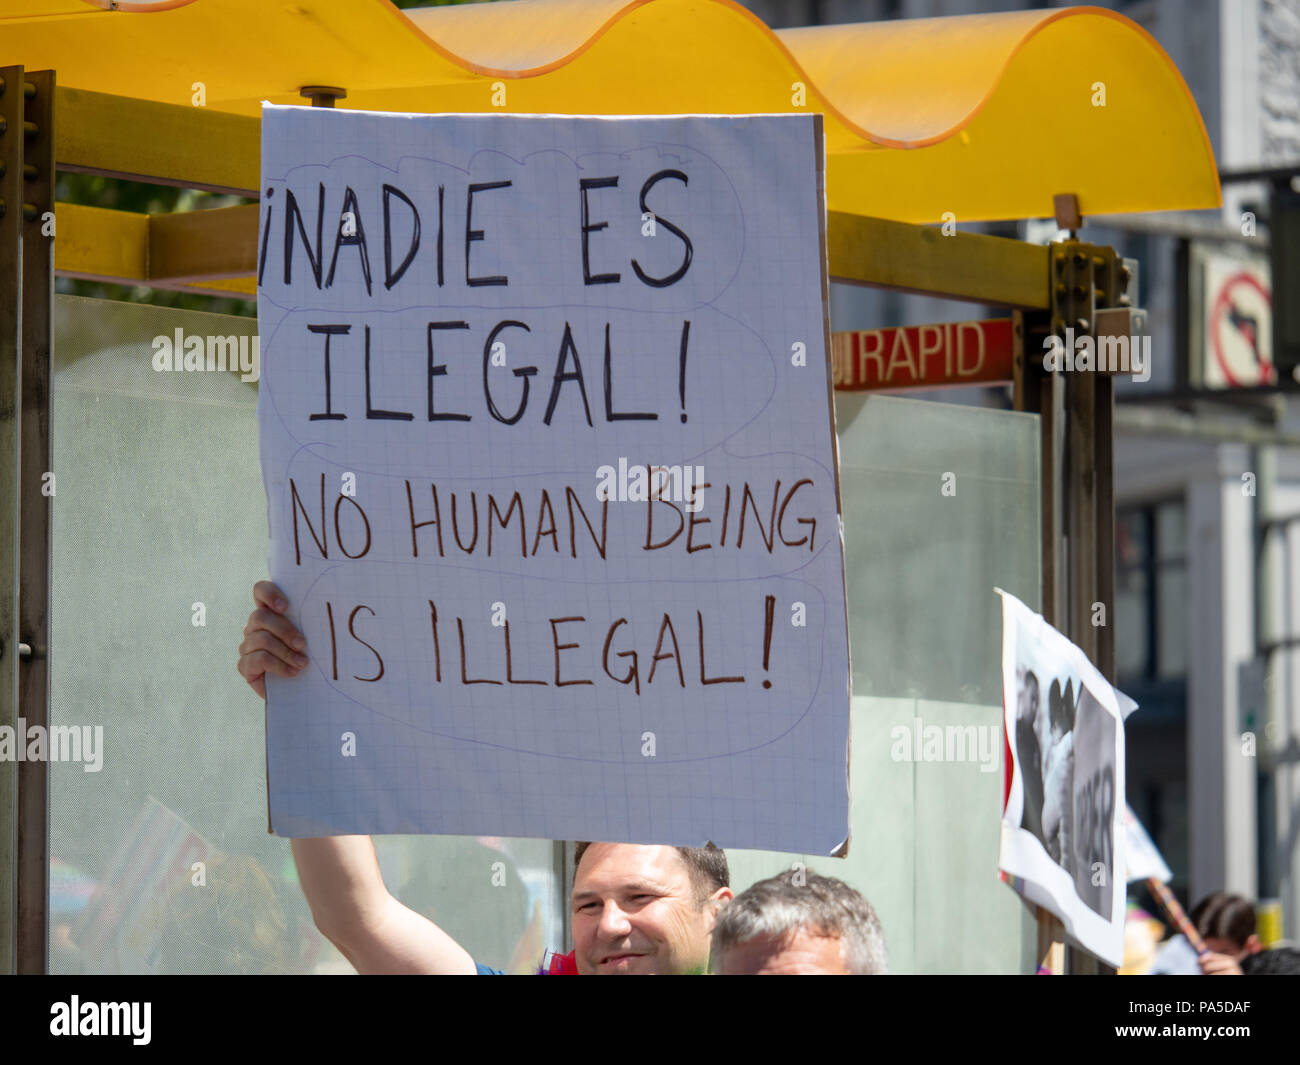 Pro-Einwanderung Zeichen auf dem Display durch eine marcher in einem lbgt Pride Parade. Kein Mensch ist illegal. Stockfoto